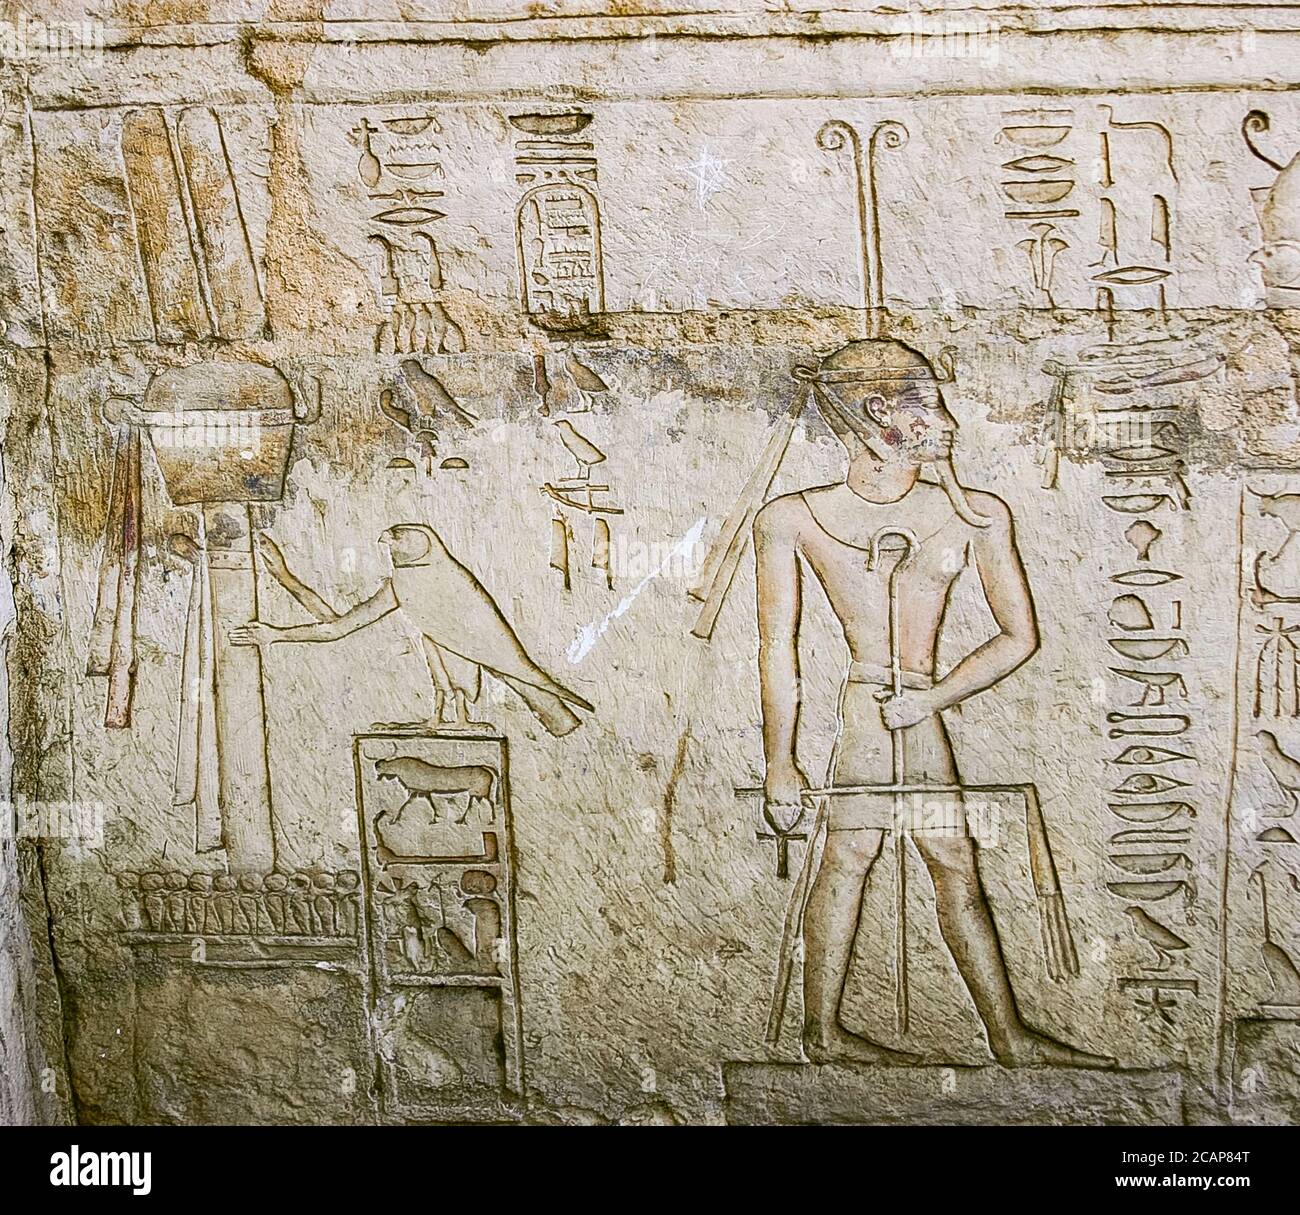 Ägypten, Nildelta, Tanis, Grab von Chechonq III, westliche Wand, unteres Register: Der königliche Falke hält das osirian Emblem und gibt Bandeletten zu Sokar. Stockfoto